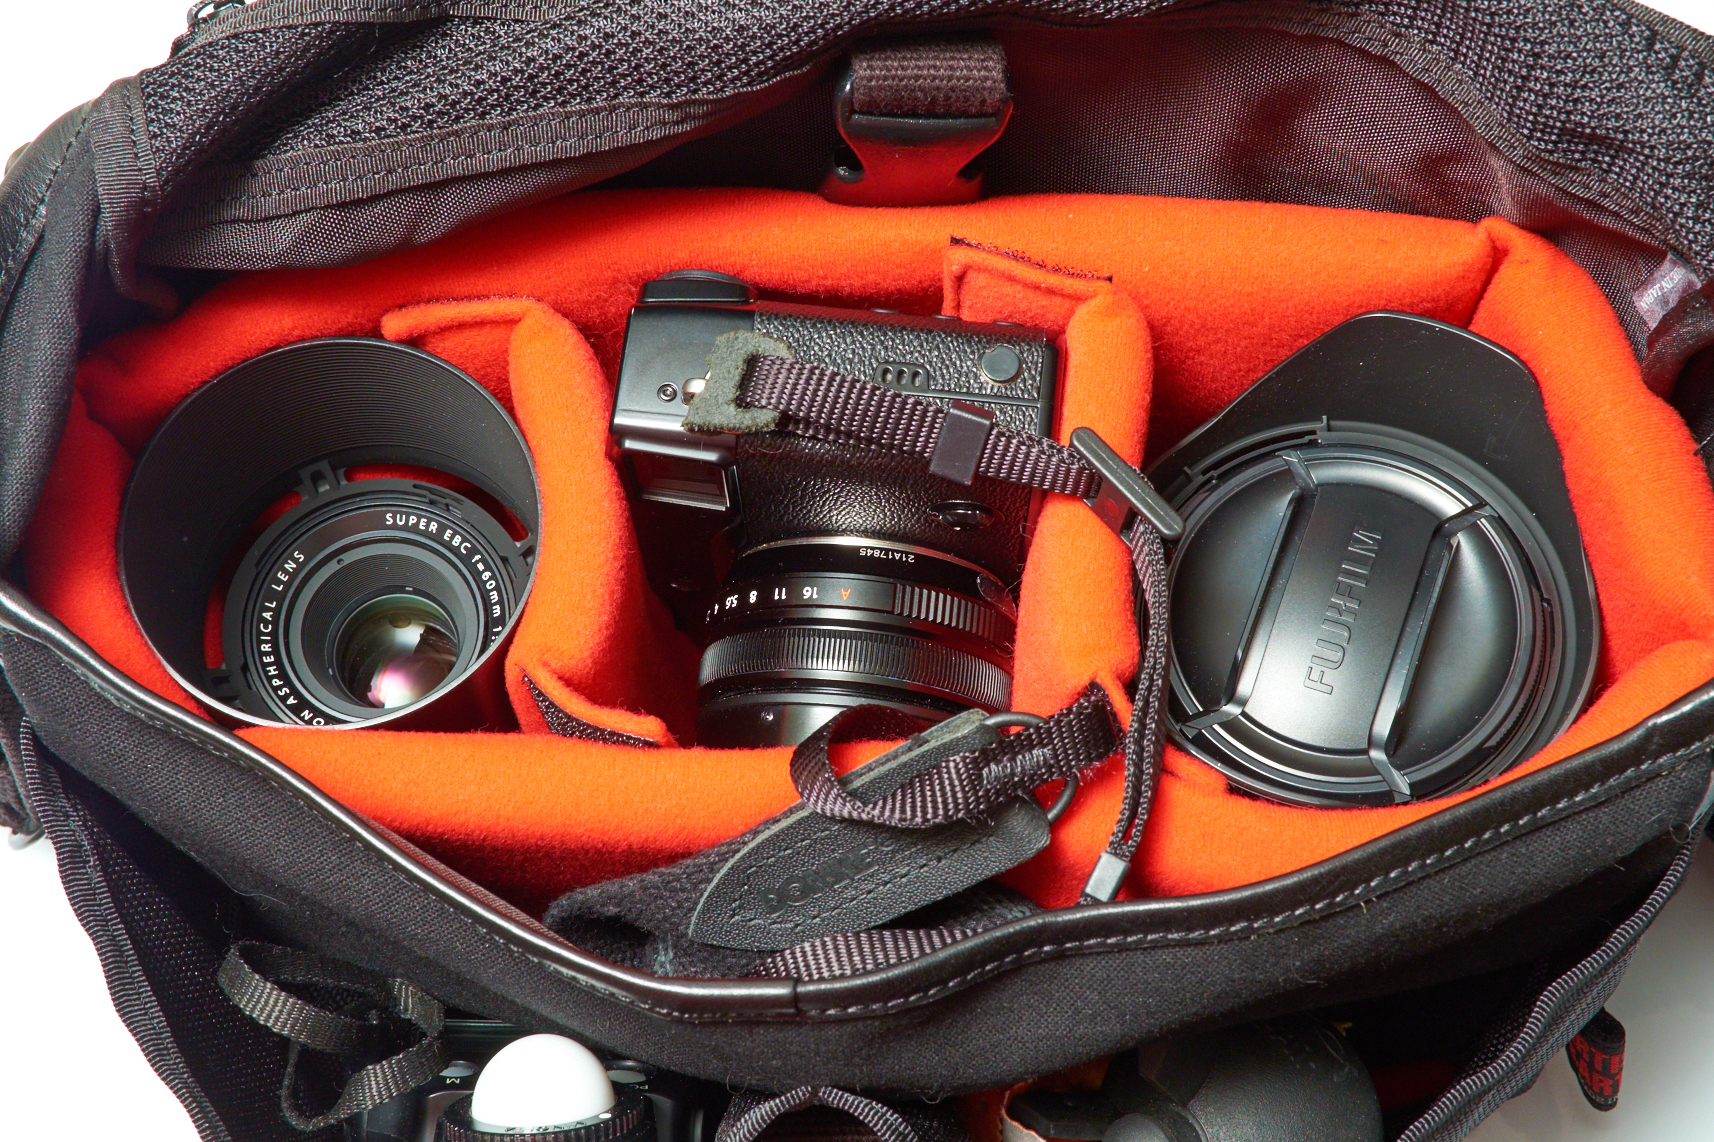 Review: The Artisan & Artist ACAM 7100 Small Camera Bag for the